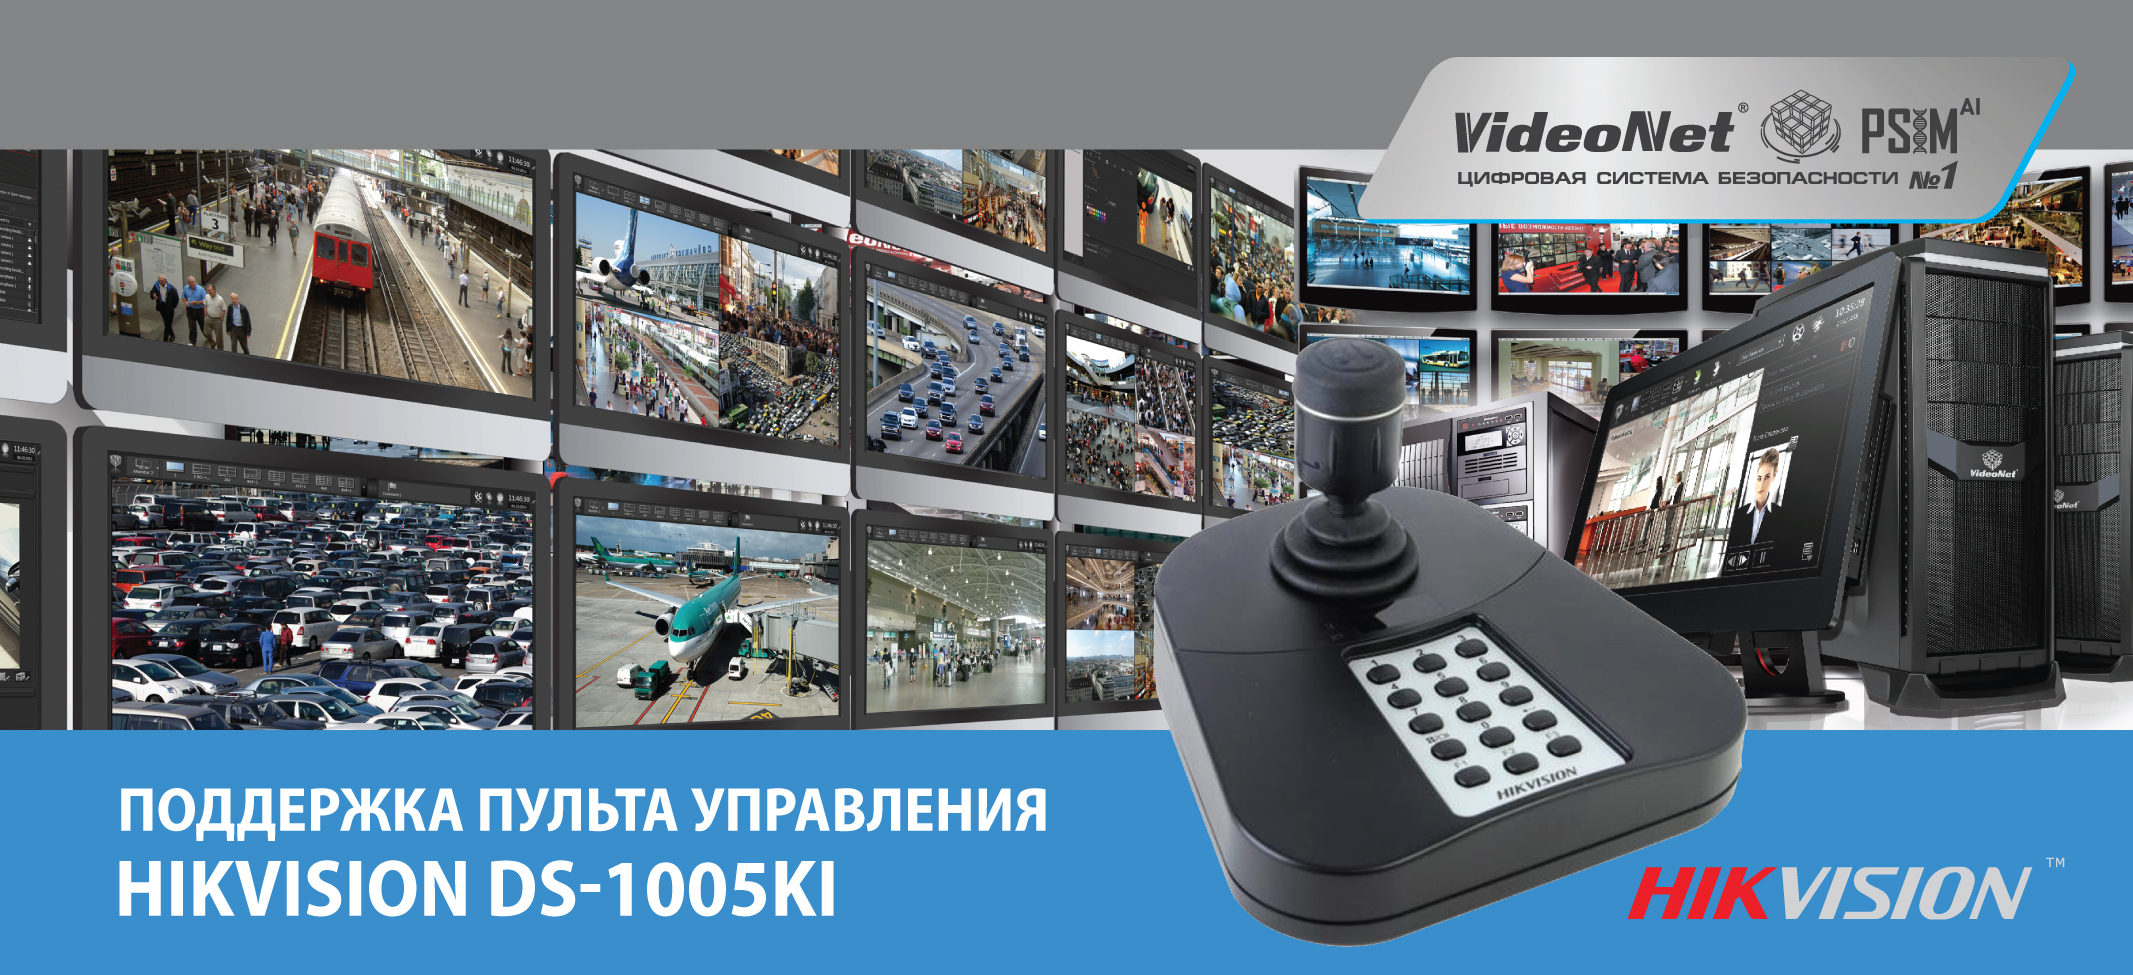 Управление поворотными камерами и видеостенами в VideoNet PSIM с помощью пультов управления